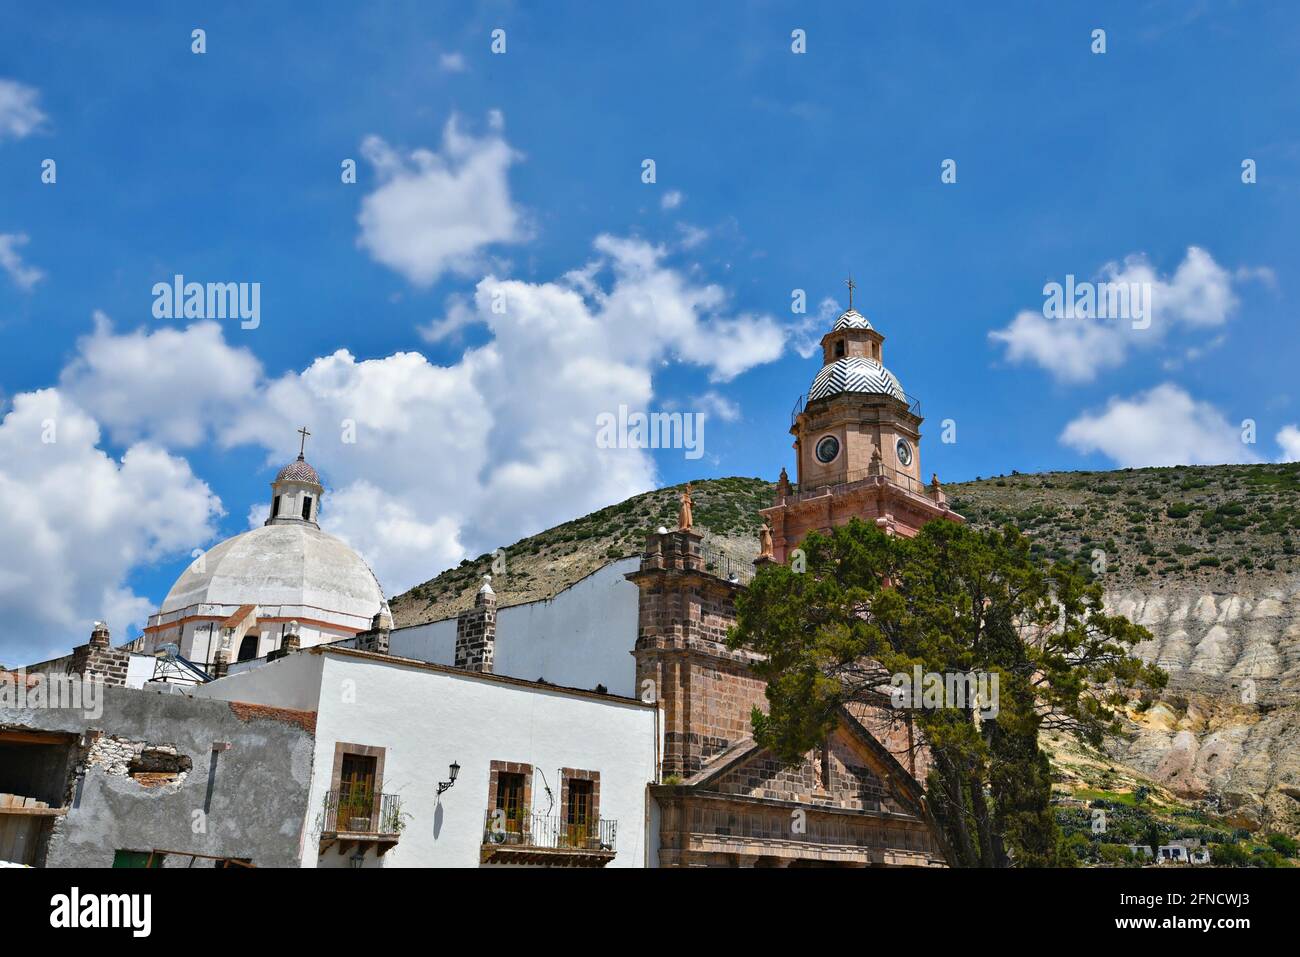 Scenic exterior view of the ancient Neoclassical style Parroquia de la Purísima Concepción in Real de Catorce, San Luis Potosí Mexico. Stock Photo